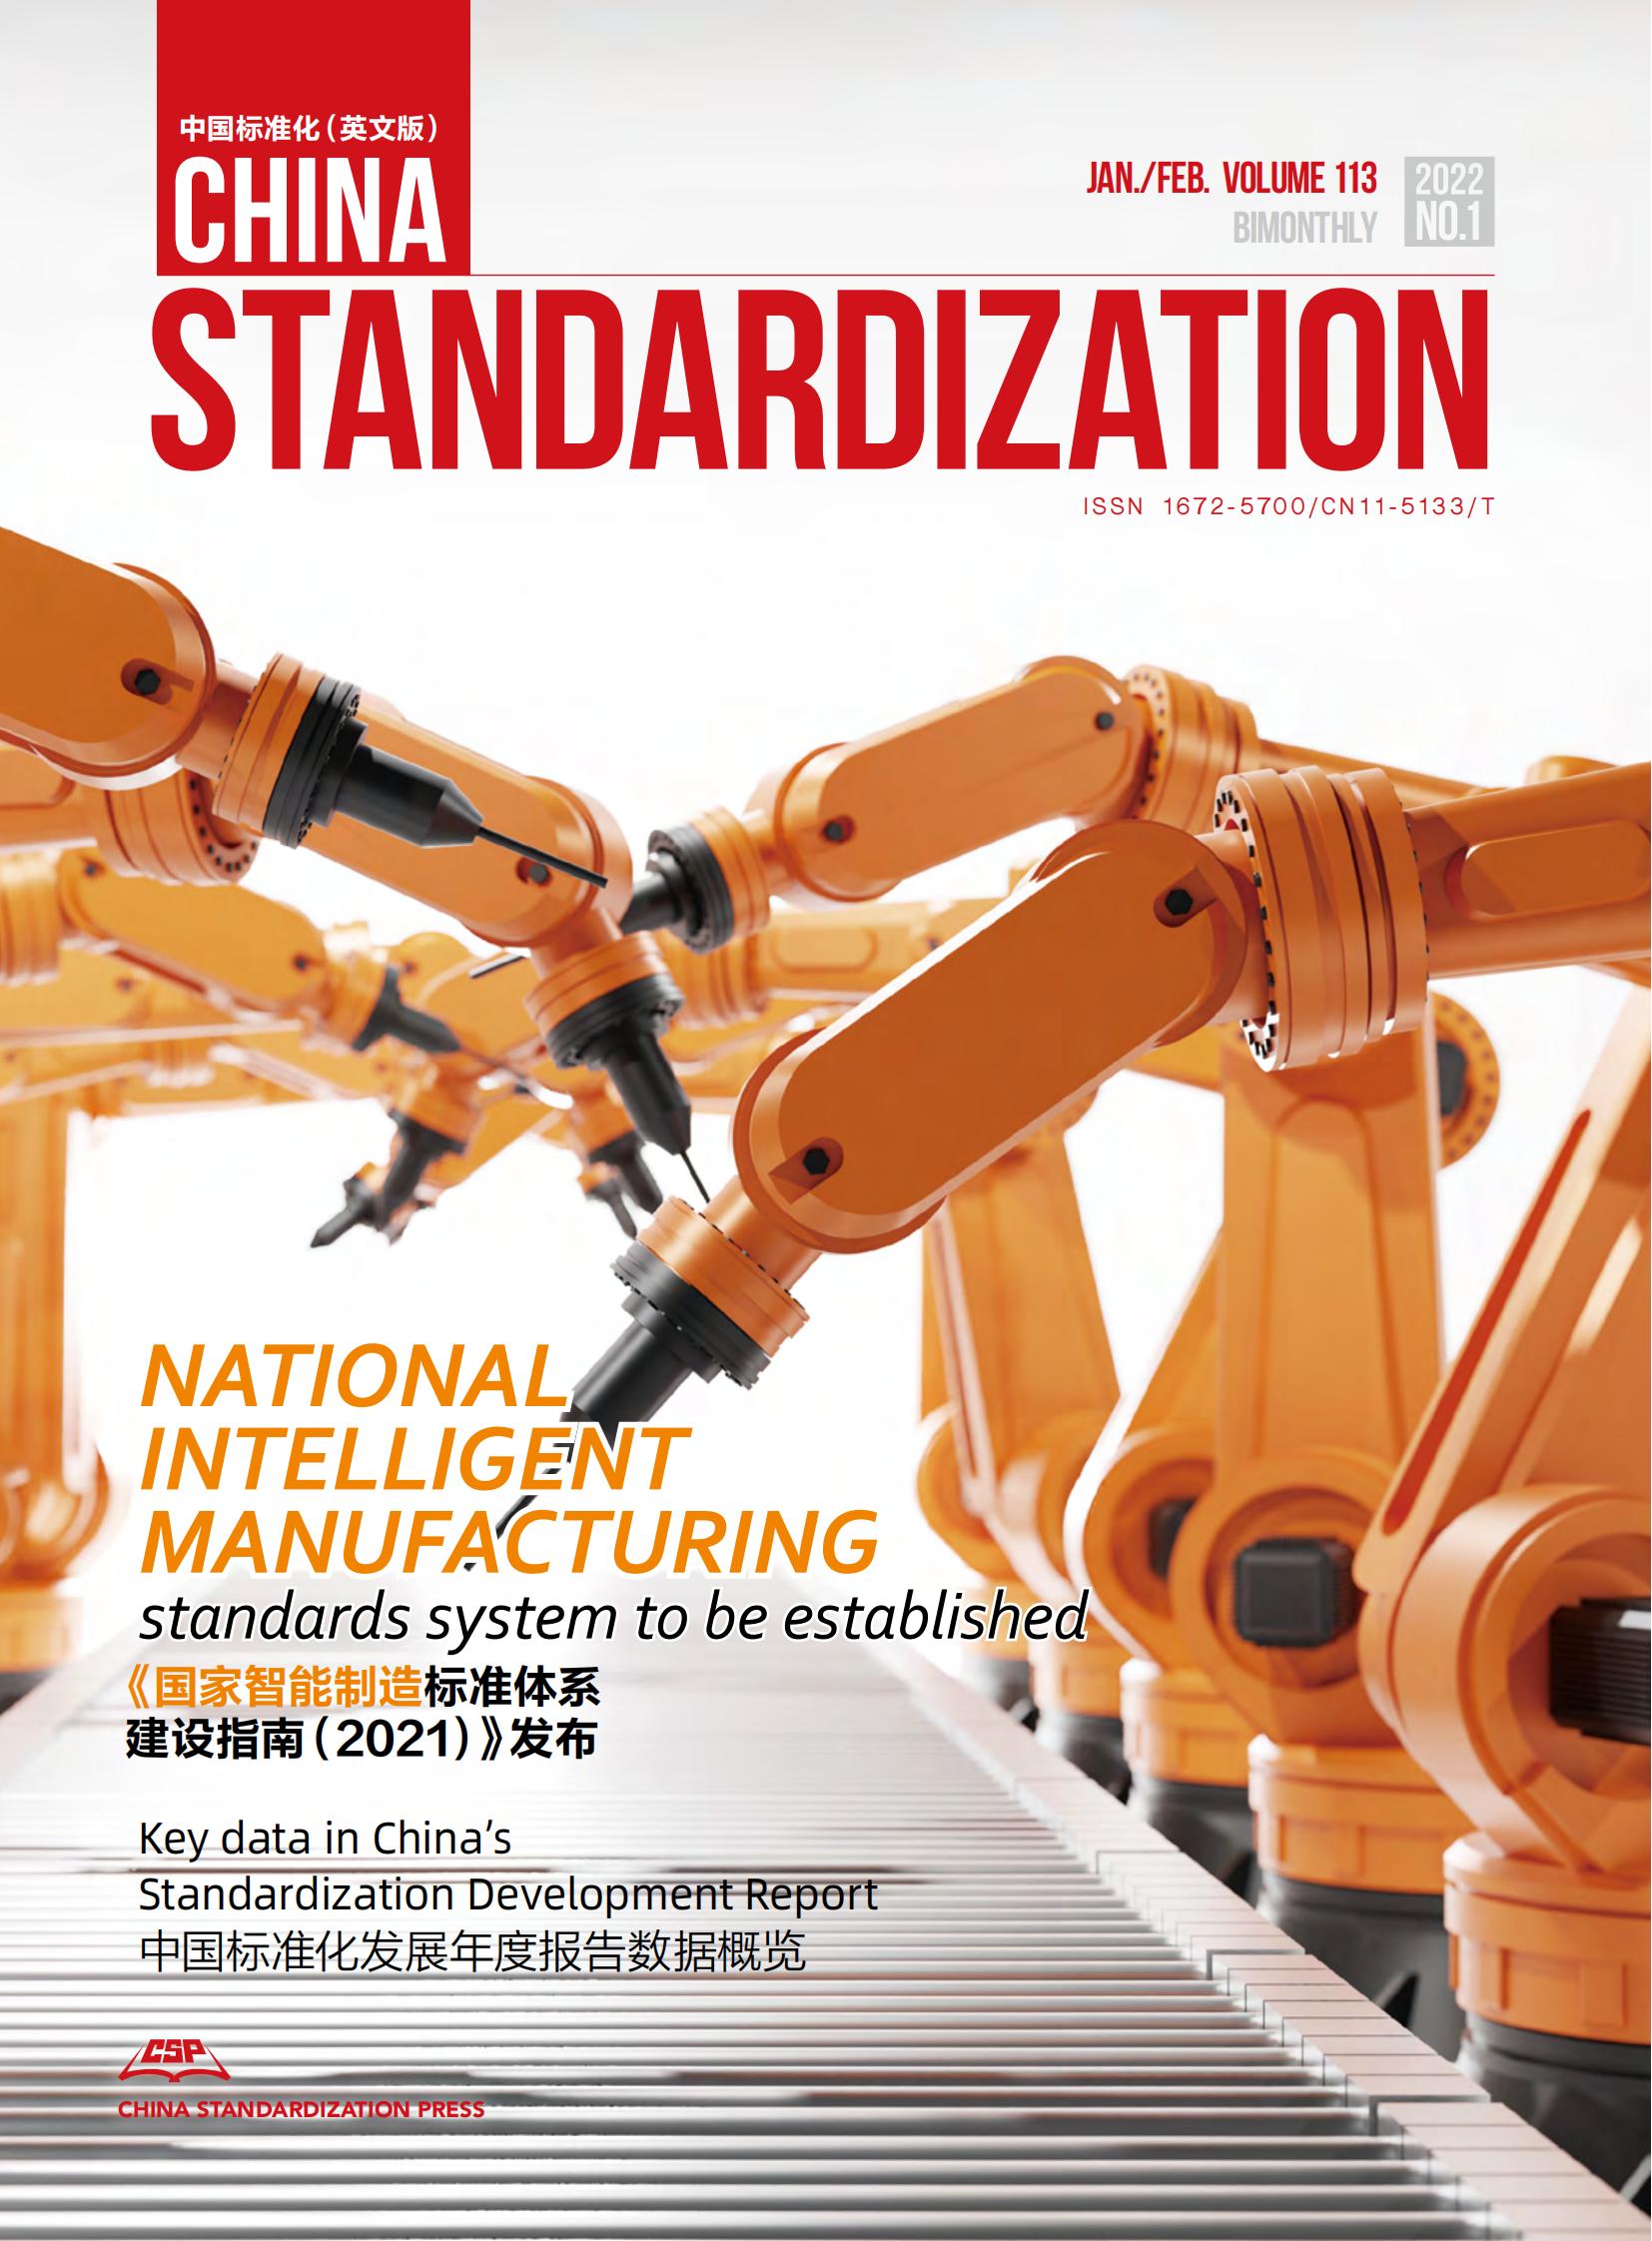 National IM standards system to be established